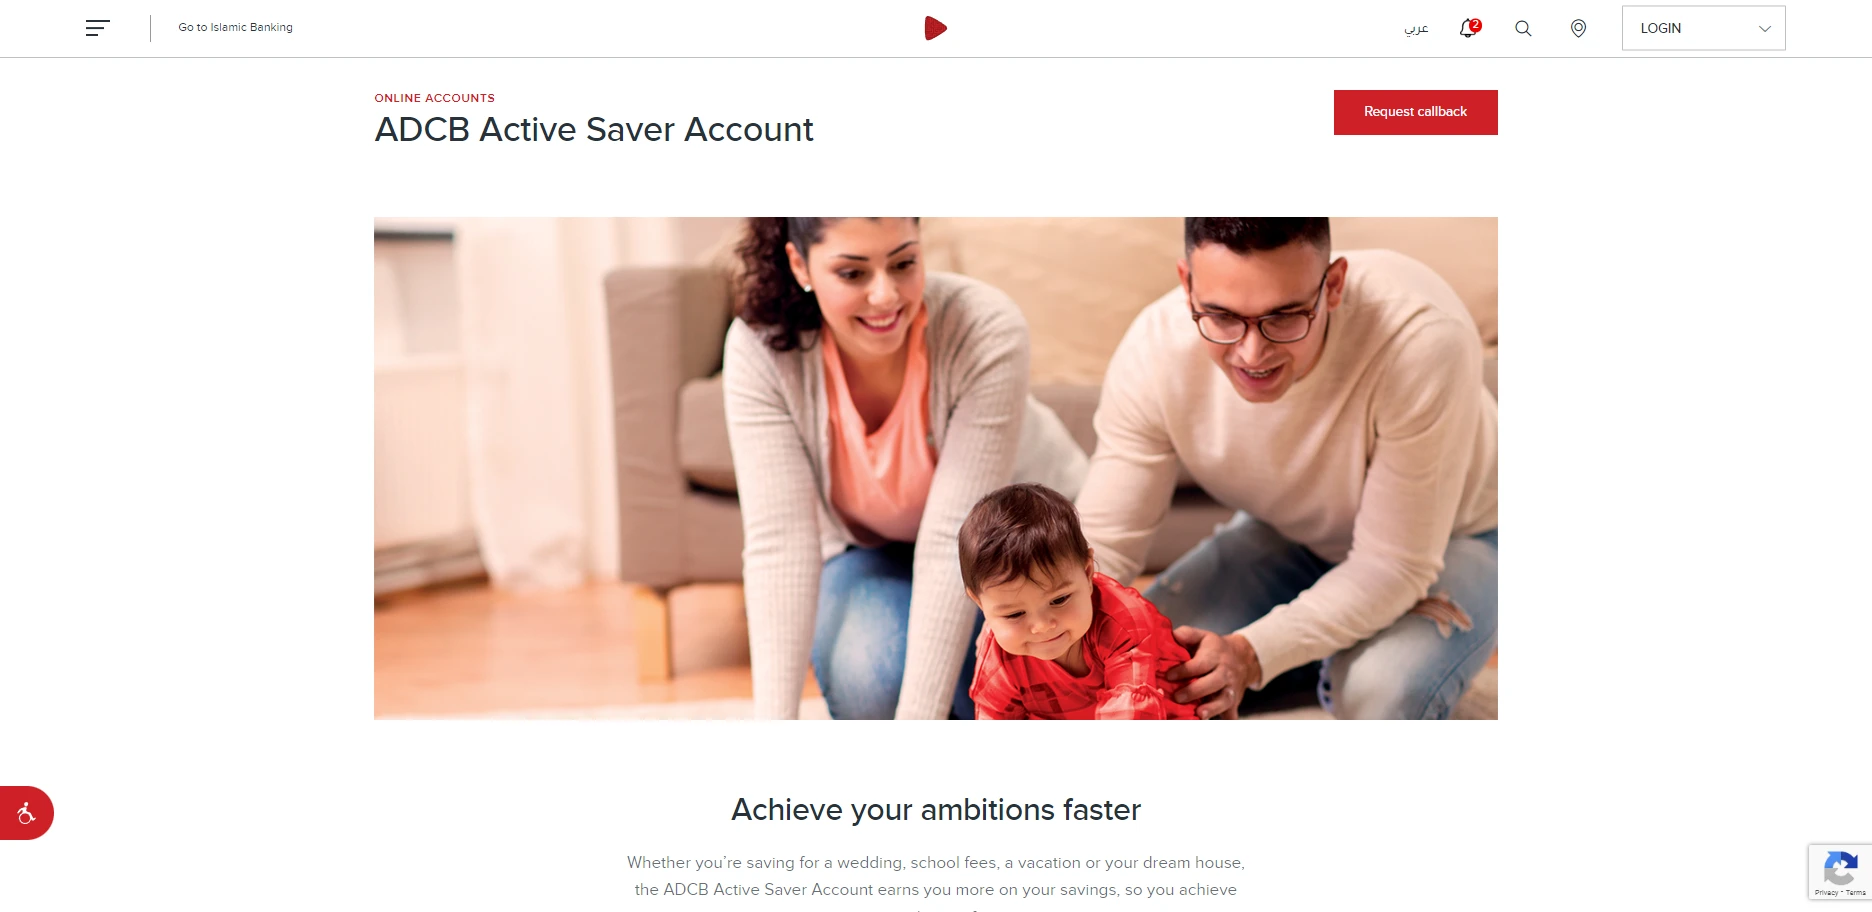 ADCB Active Saver Account, Dubai